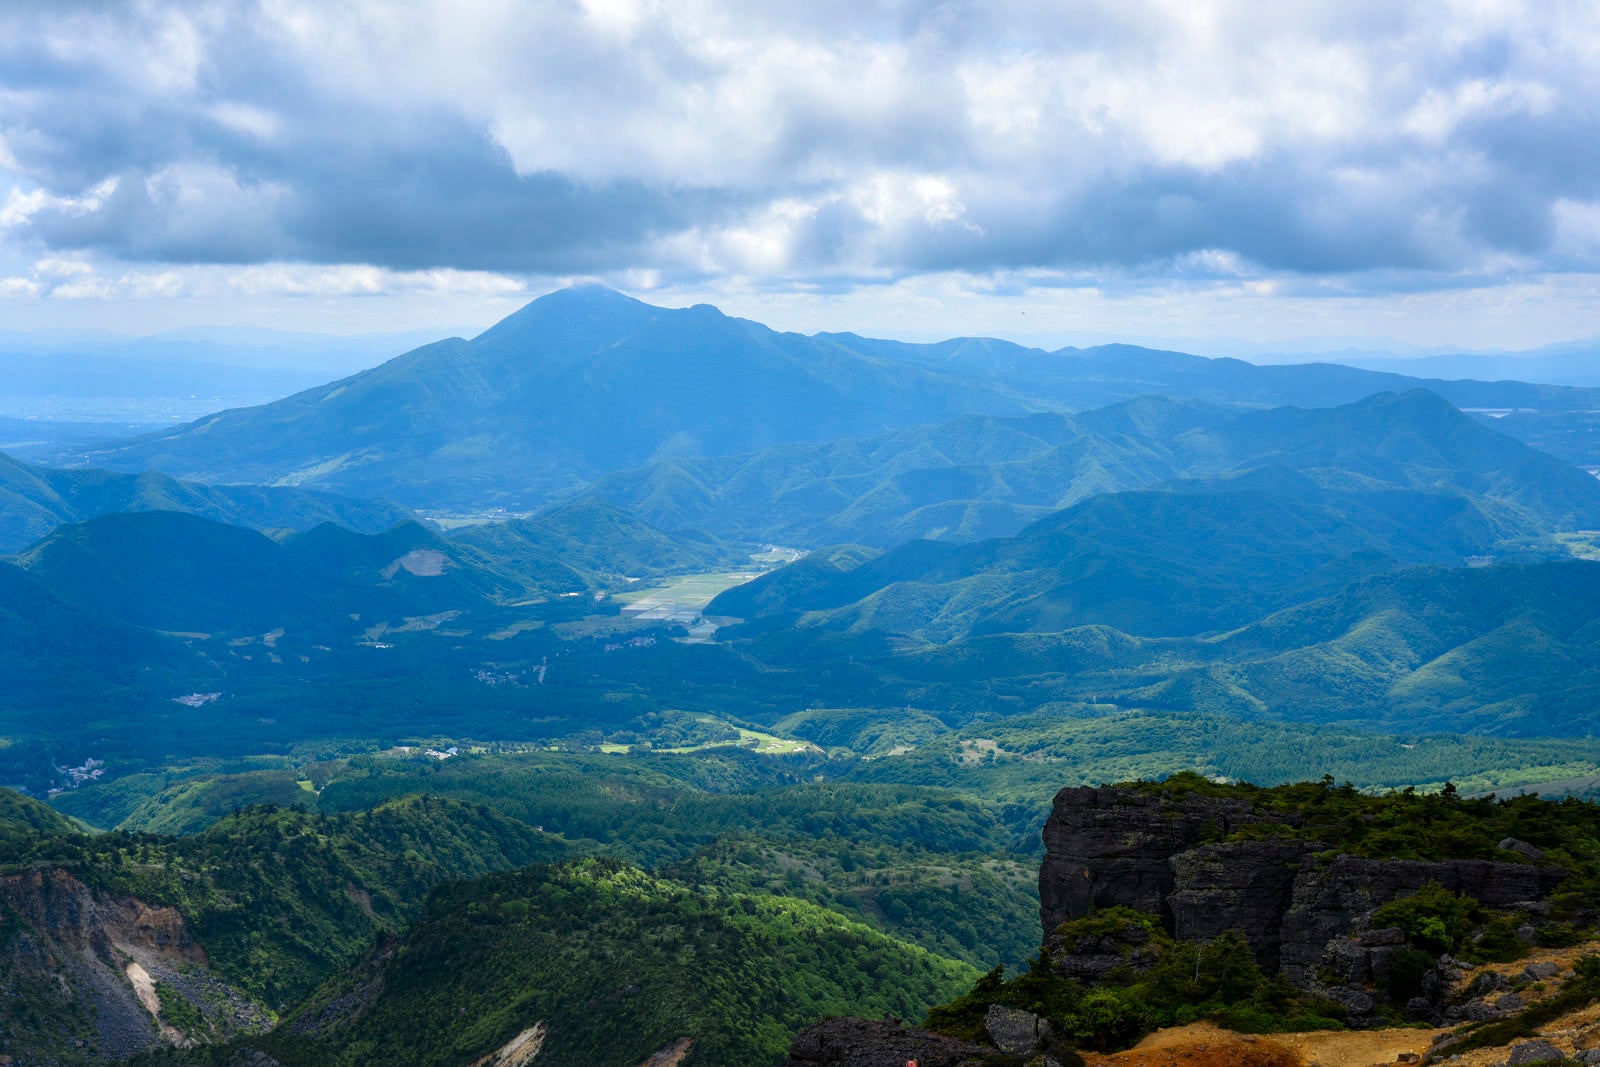 「安達太良山から見る新緑の磐梯山方面」の写真